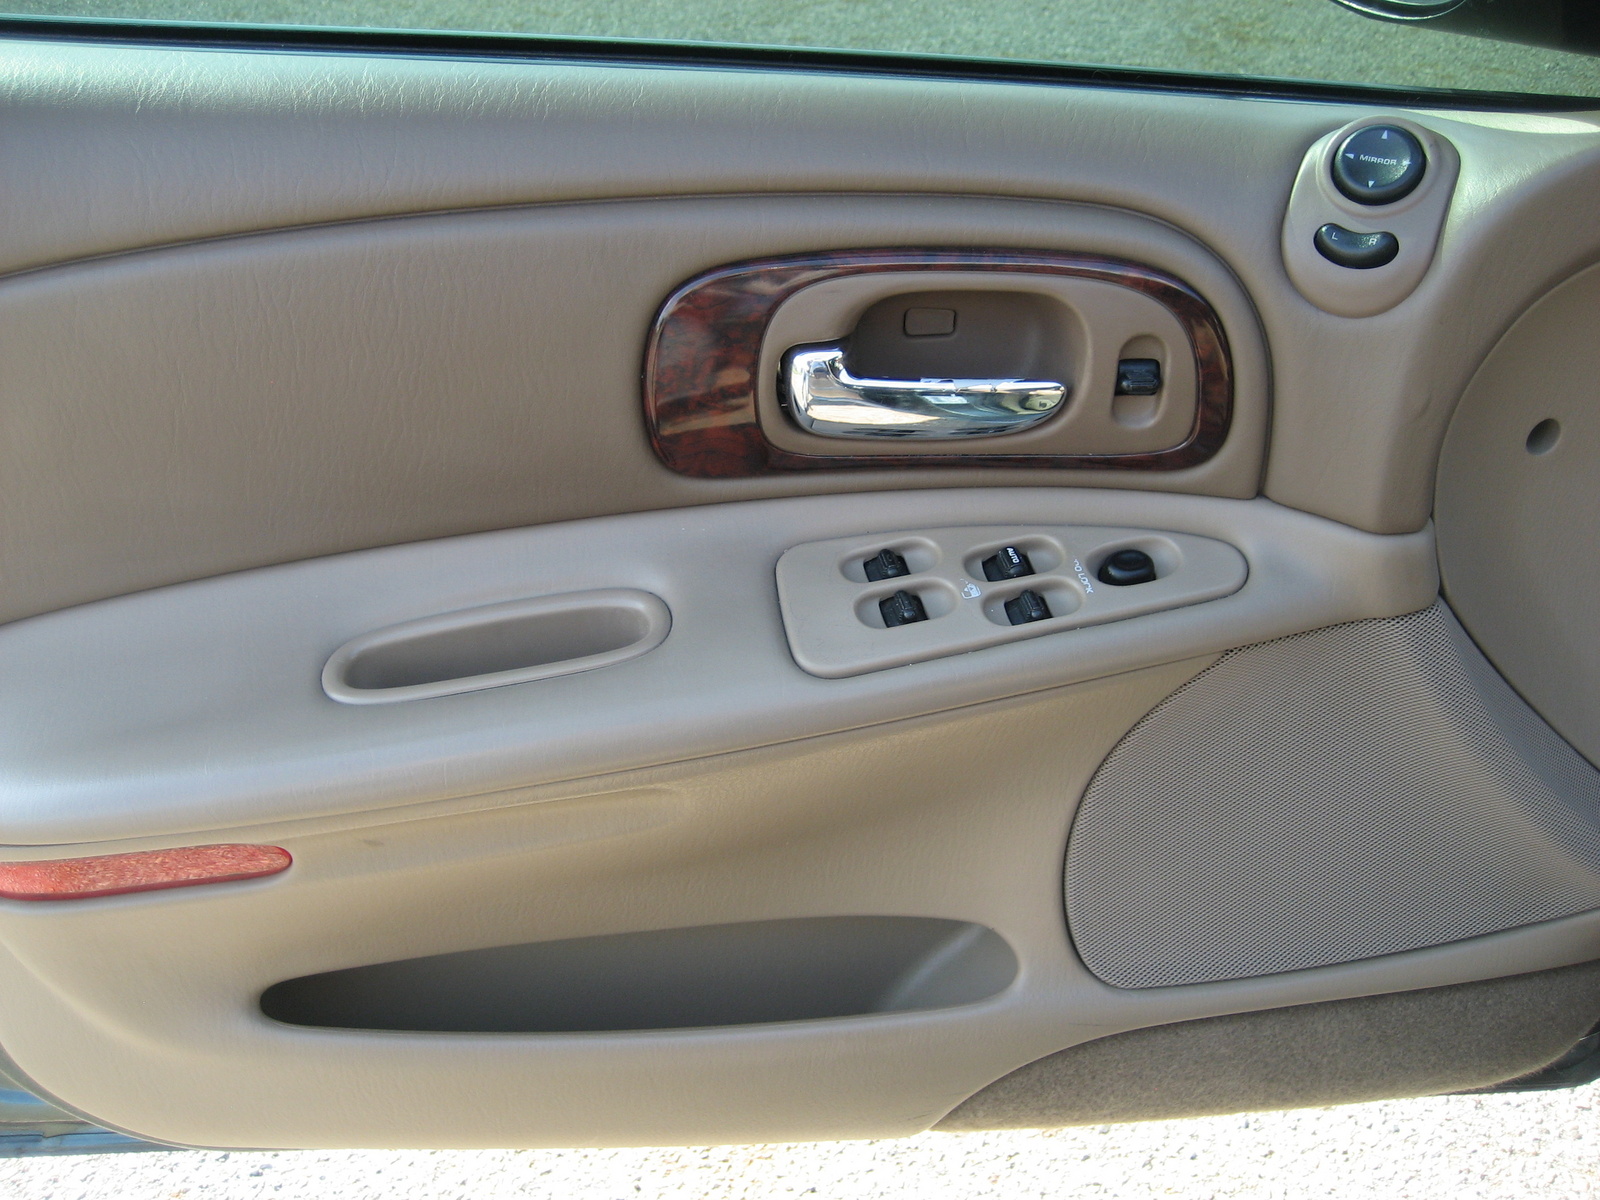 2004 Chrysler concorde lxi specs #4